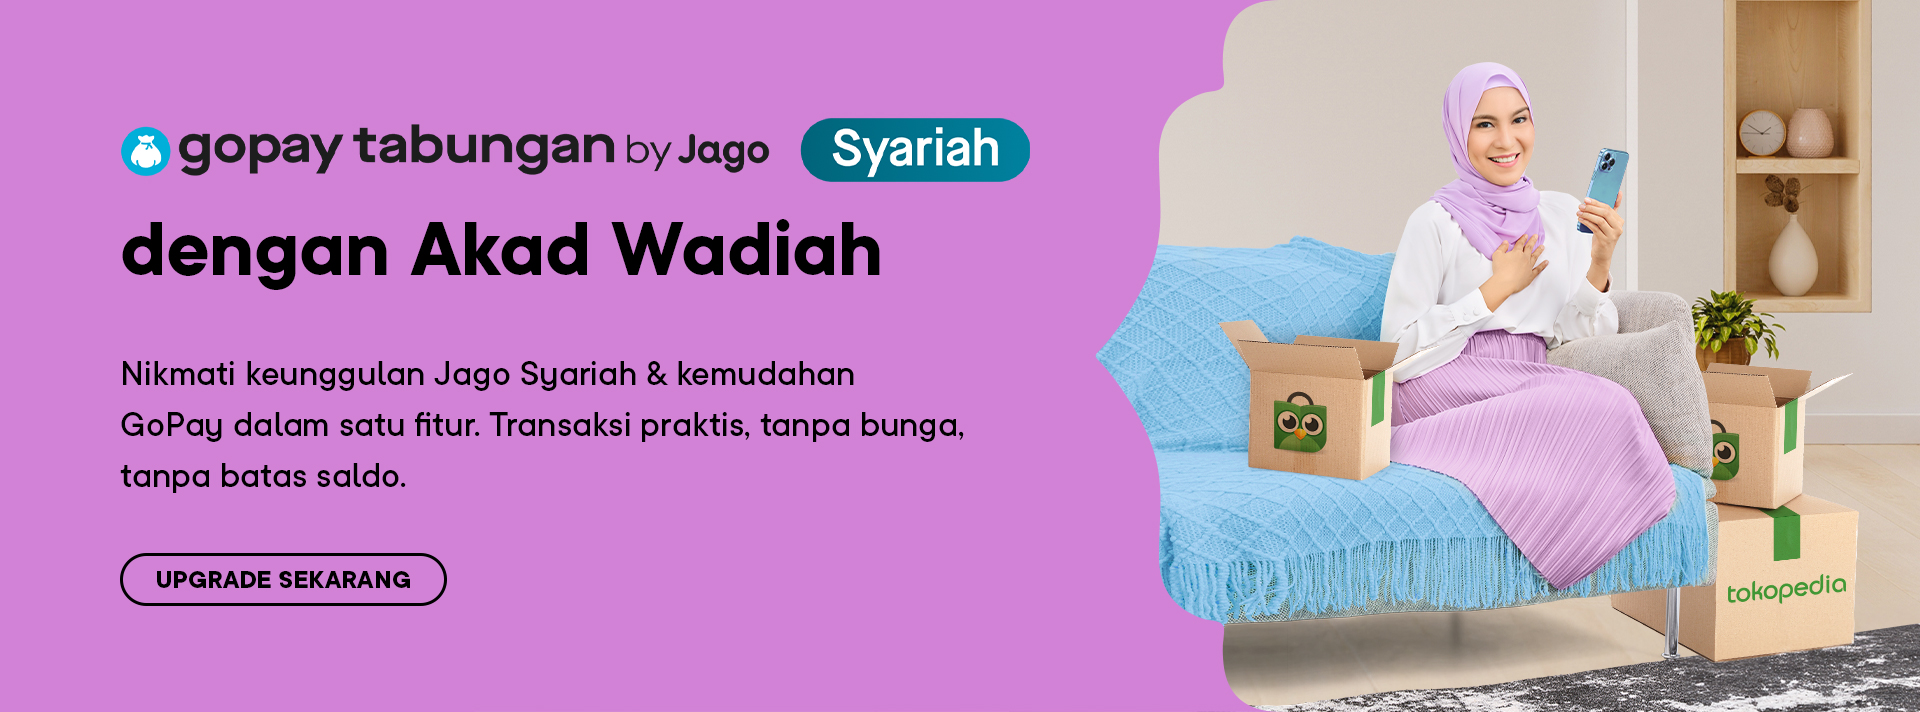 GoPay Tabungan Syariah by Jago dengan Akad Wadiah